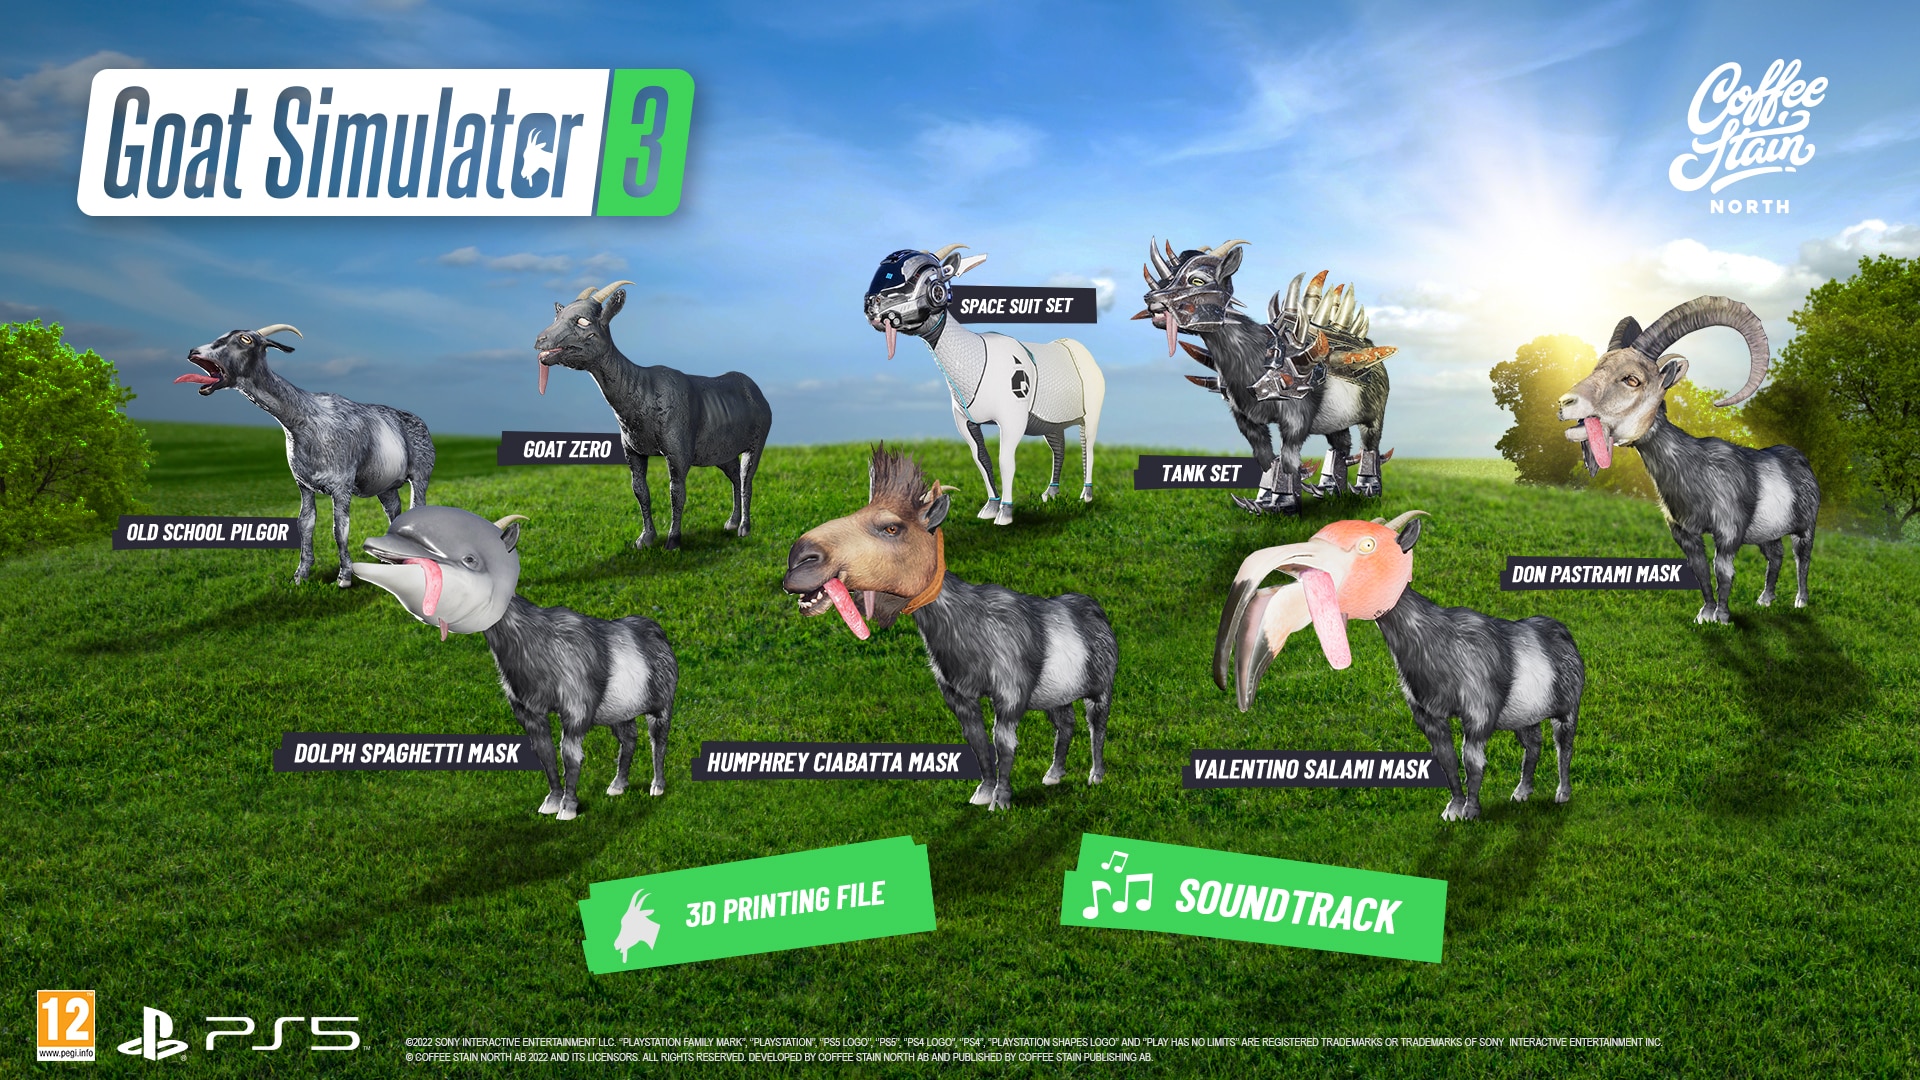 Goat Simulator 3 preorder